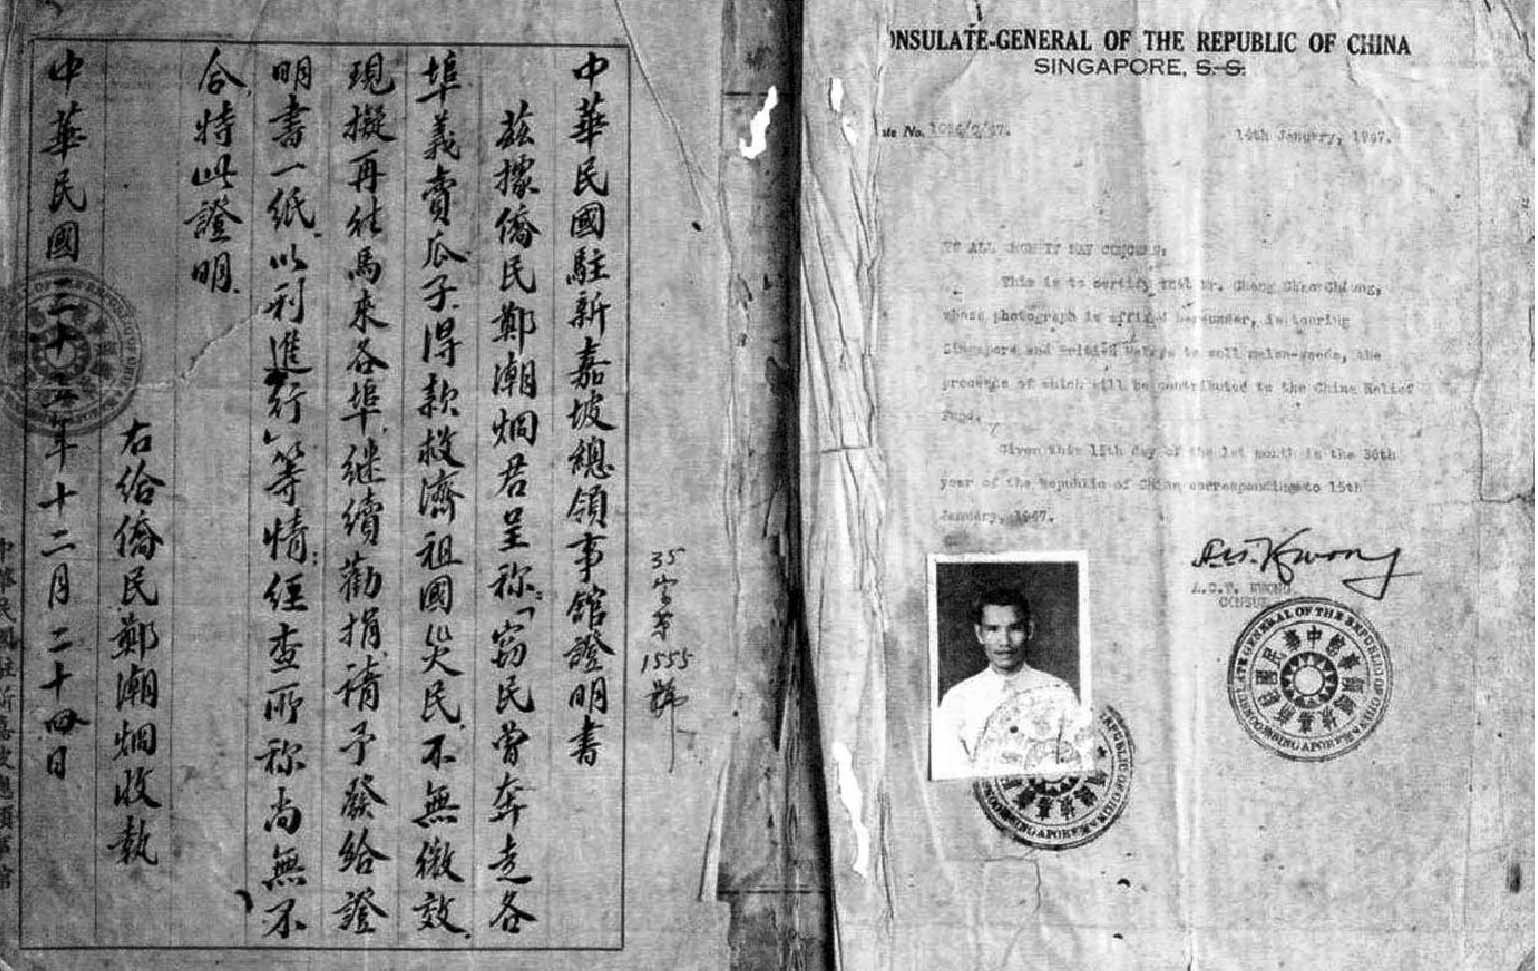 1946年中华民国驻新嘉(加)坡总领事馆为郑潮炯义卖瓜子出具的证明书